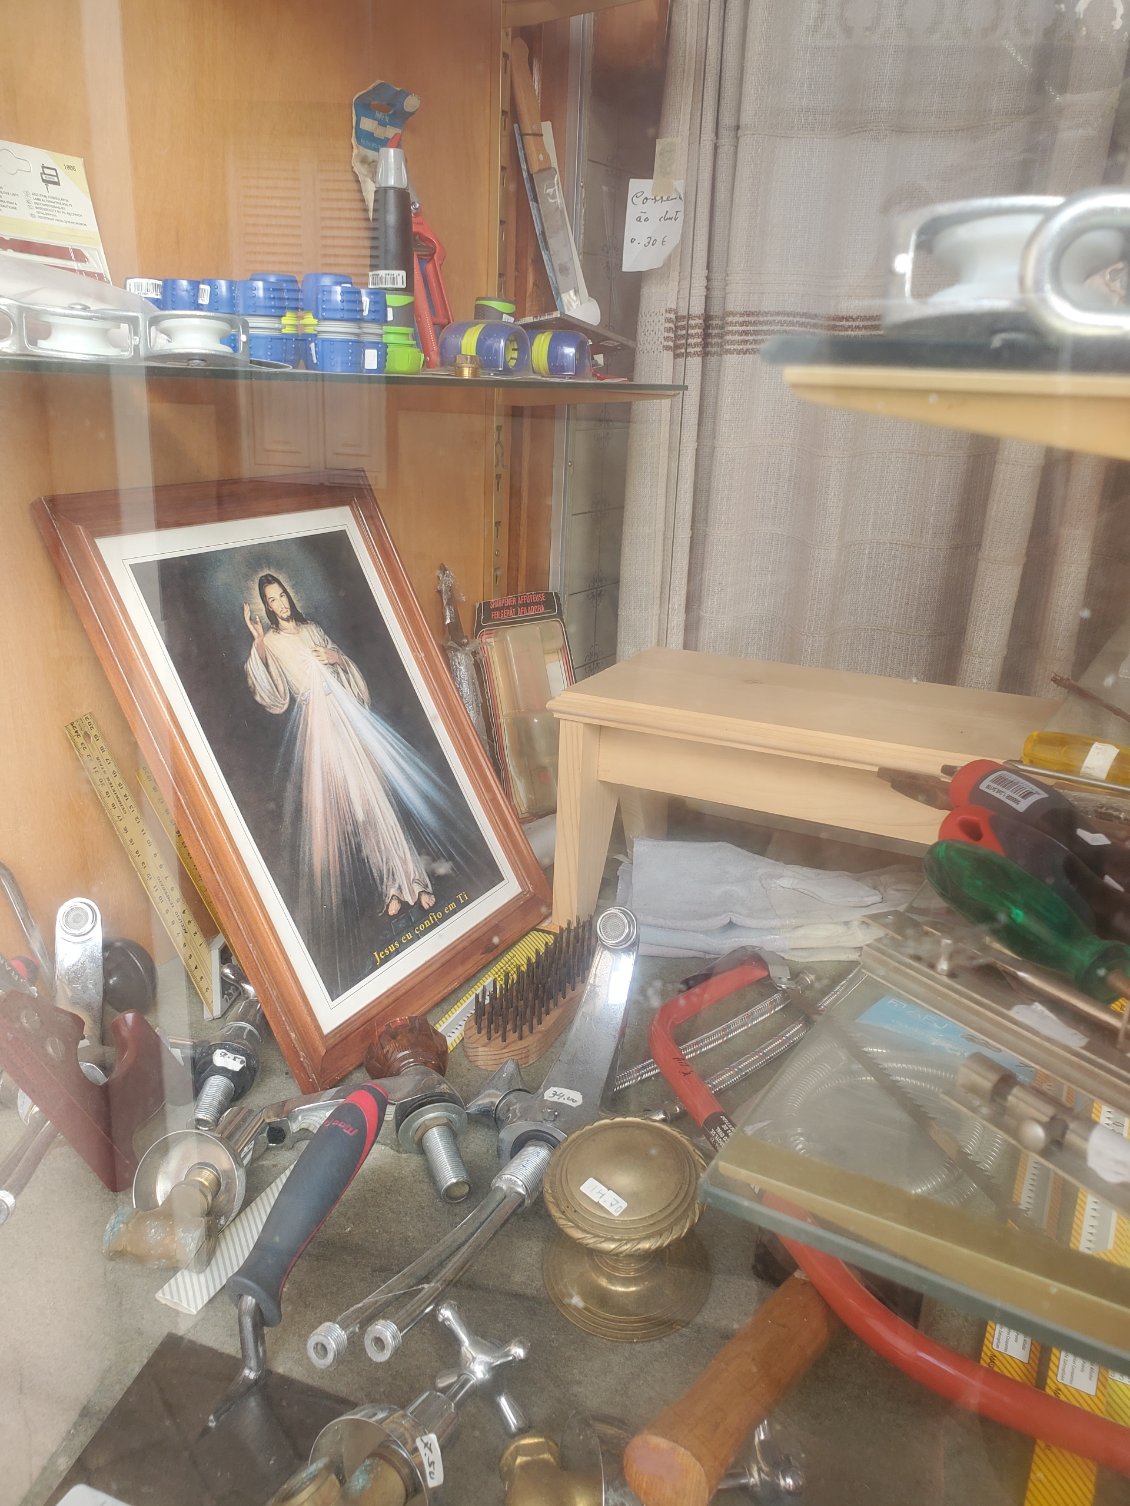 Dans Les vitrines de tous les magasins on trouve des images saintes au milieu de bric et de broc.